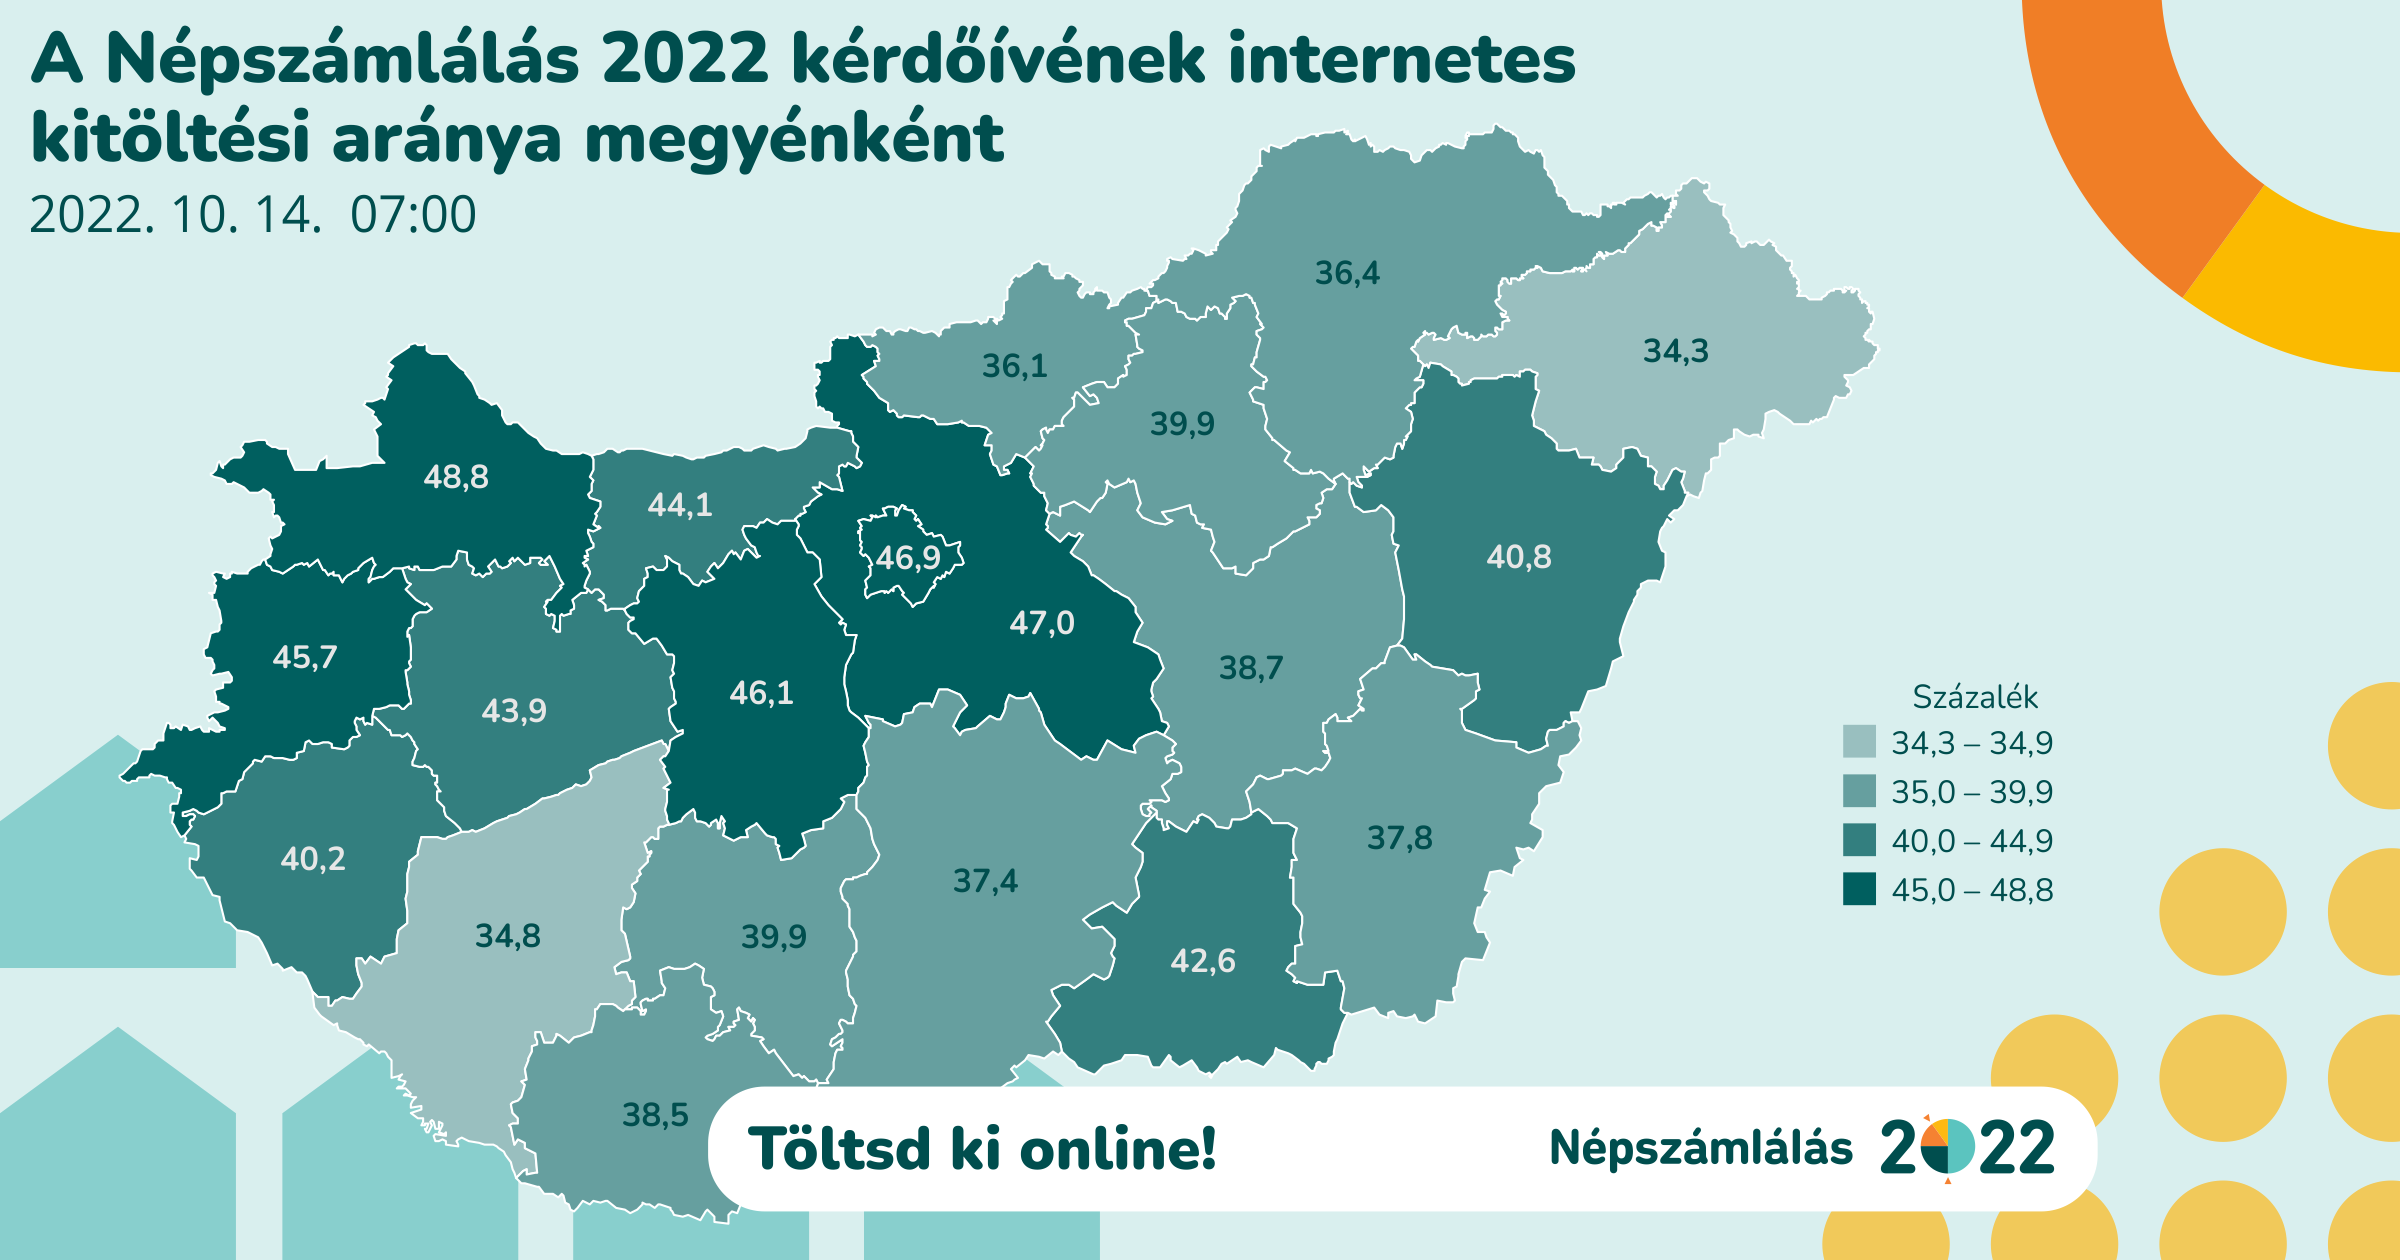 A népszámlálás 2022 kérdőíveinek internetes kitöltési aránya megyénként